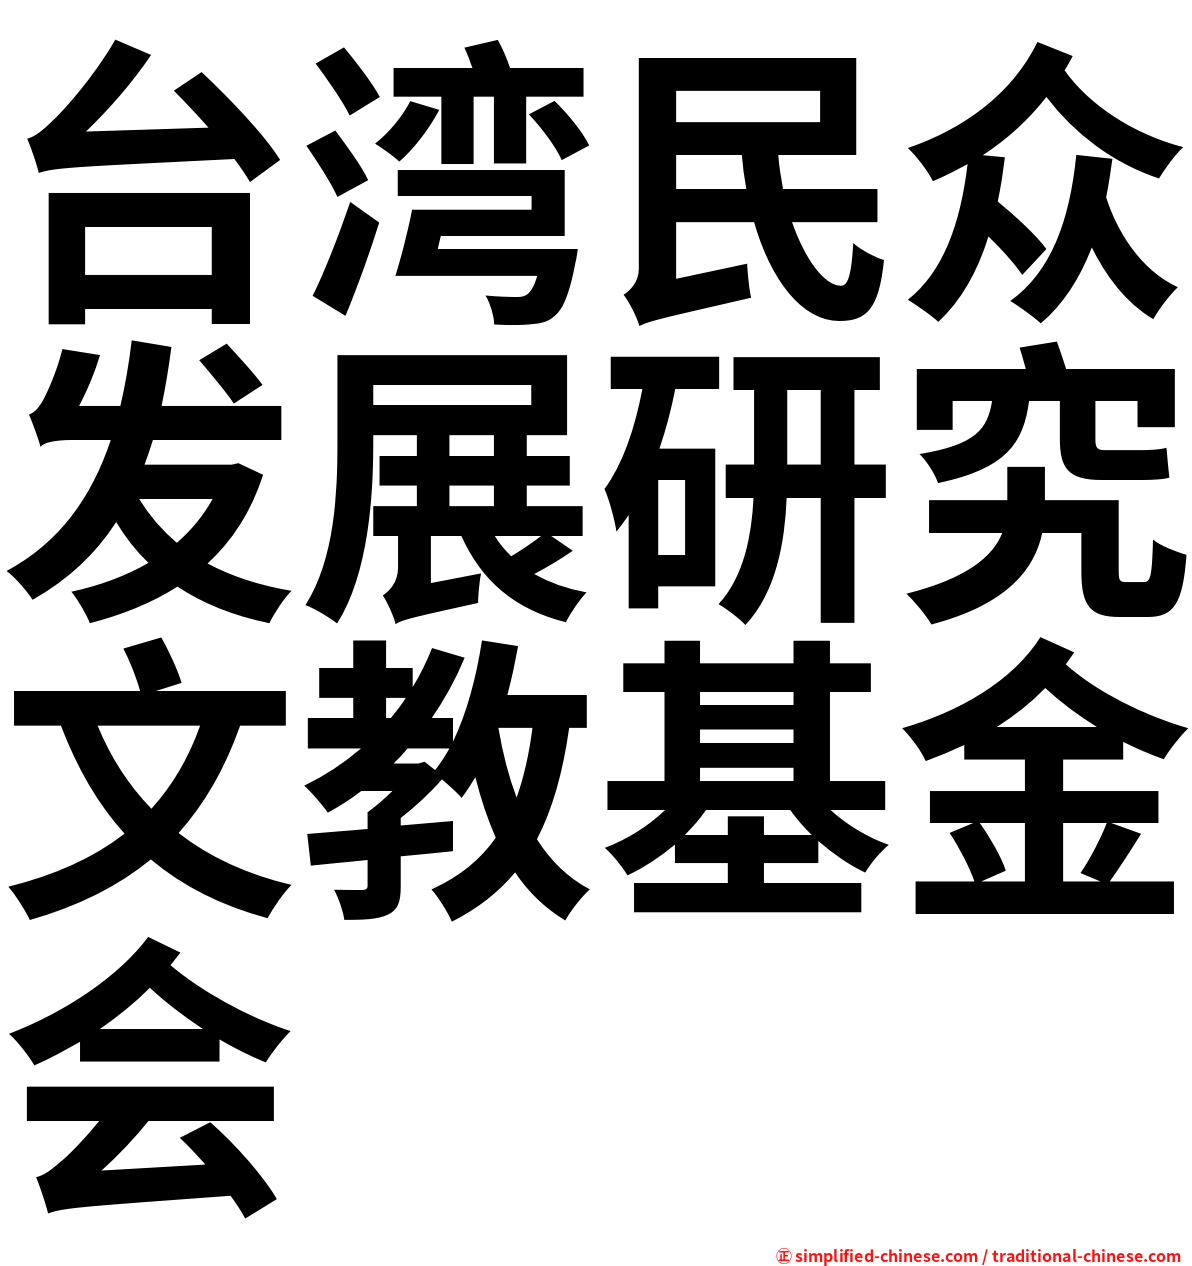 台湾民众发展研究文教基金会